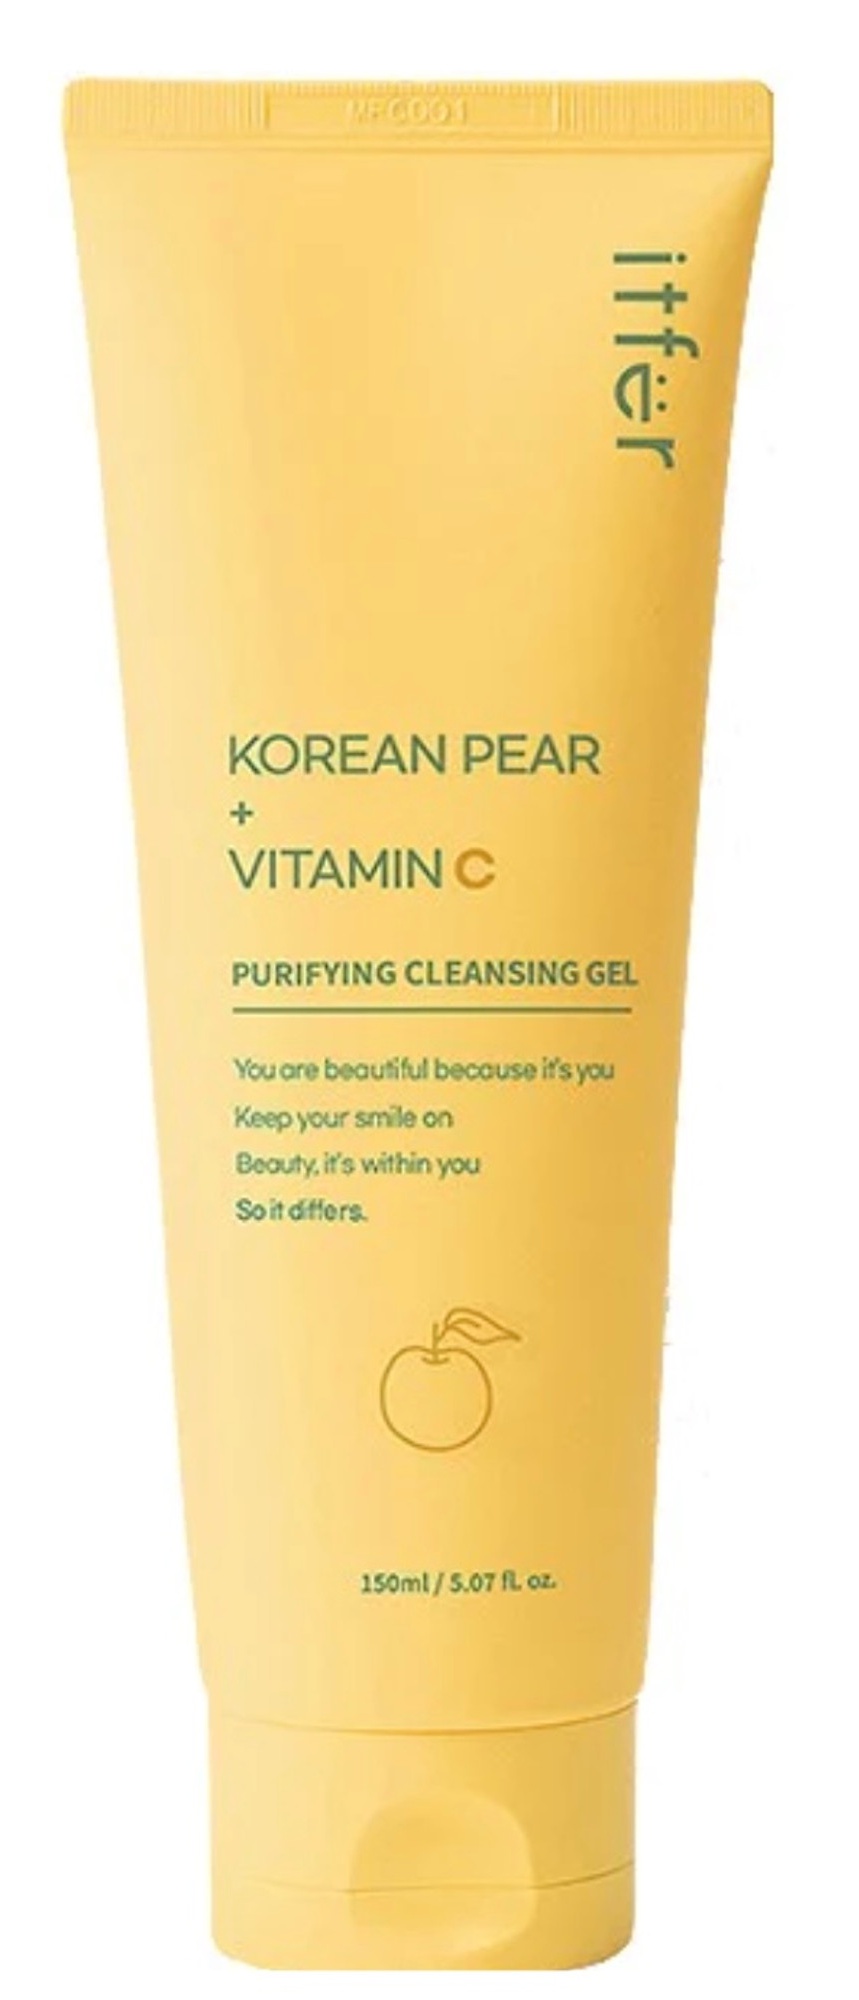 ITFER Korean Pear Vitamin C Cleansing Gel